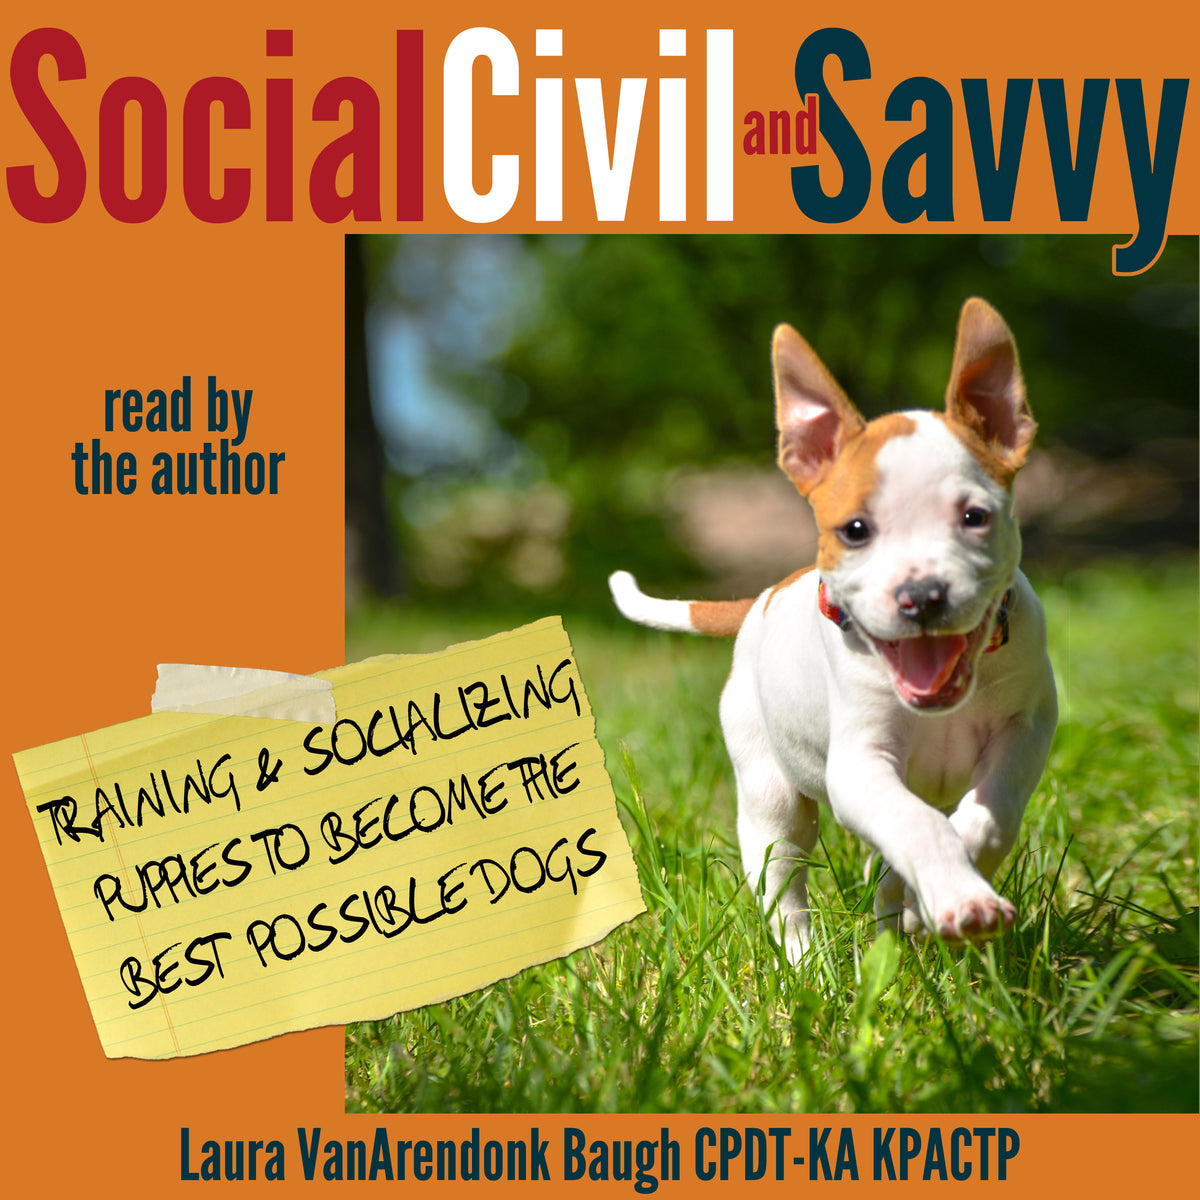 Social, Civil, & Savvy  by Laura VanArendonk Baugh CPDT-KA KPACTPA Audio Book